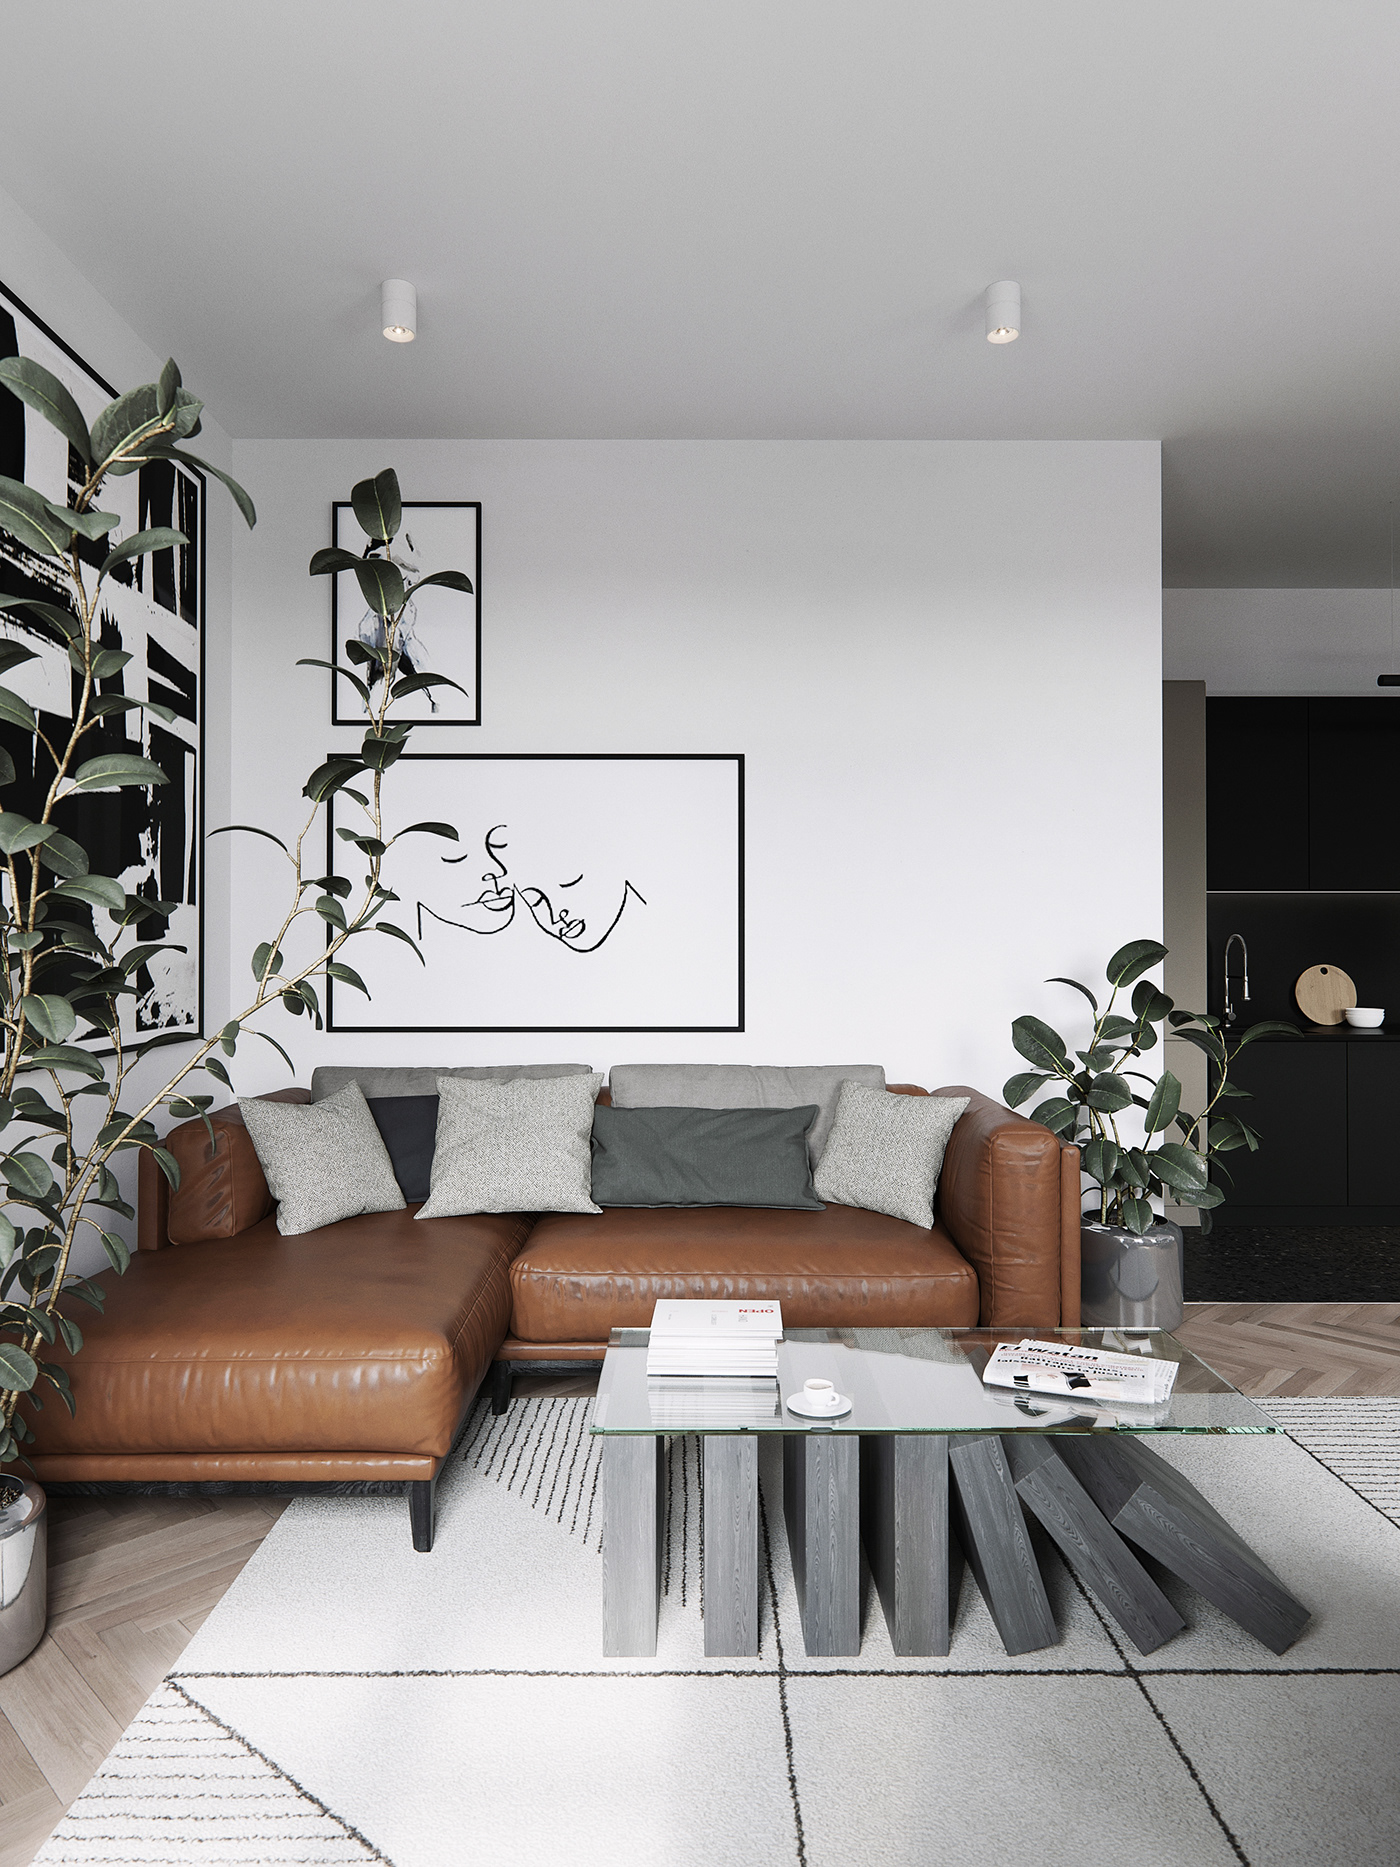 minimalist interior Lidval Minimalism Interior White vizu coronarenderer 3dsmax ganzha design